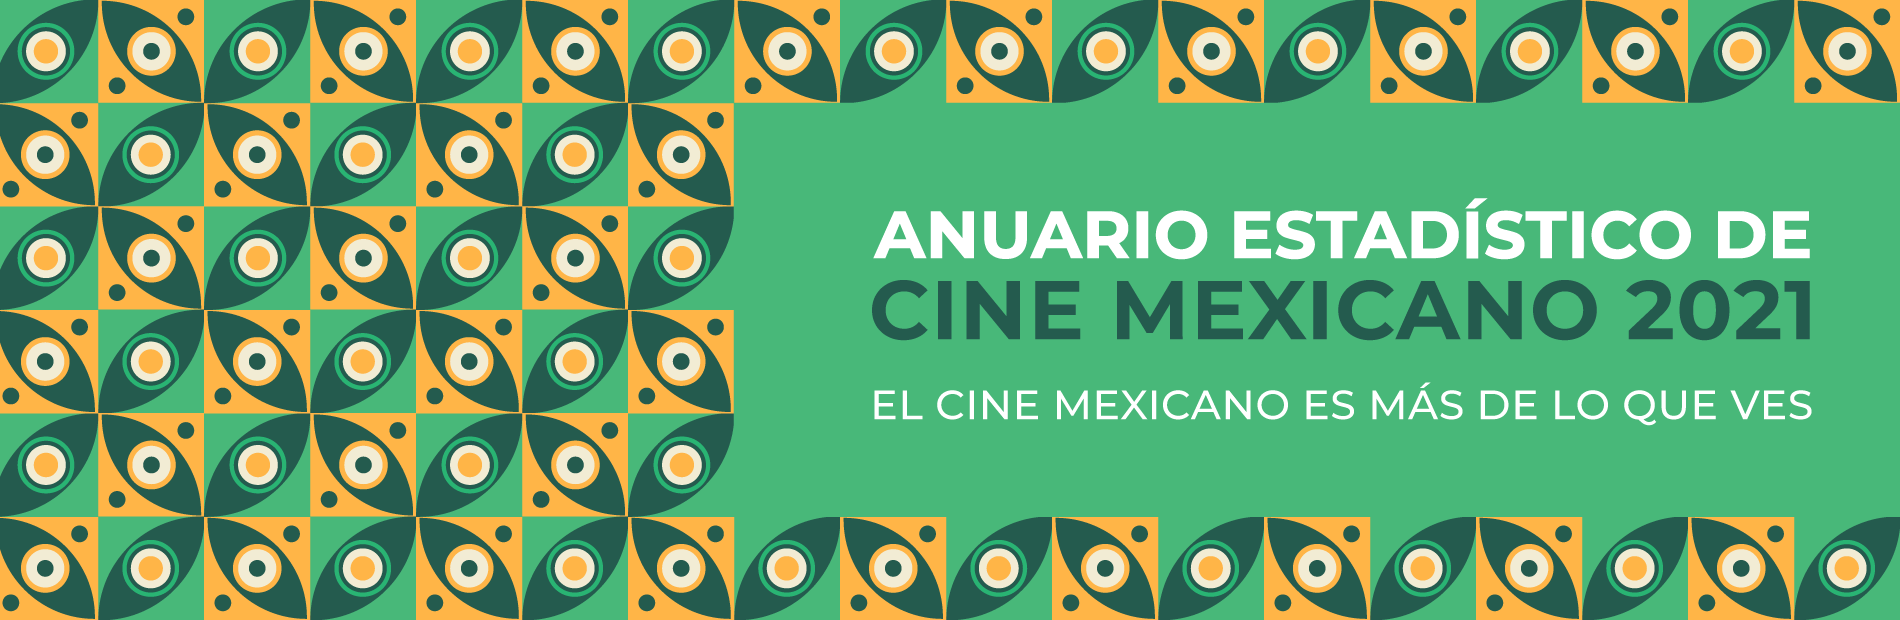 Anuario Estadístico de Cine Mexicano 2021